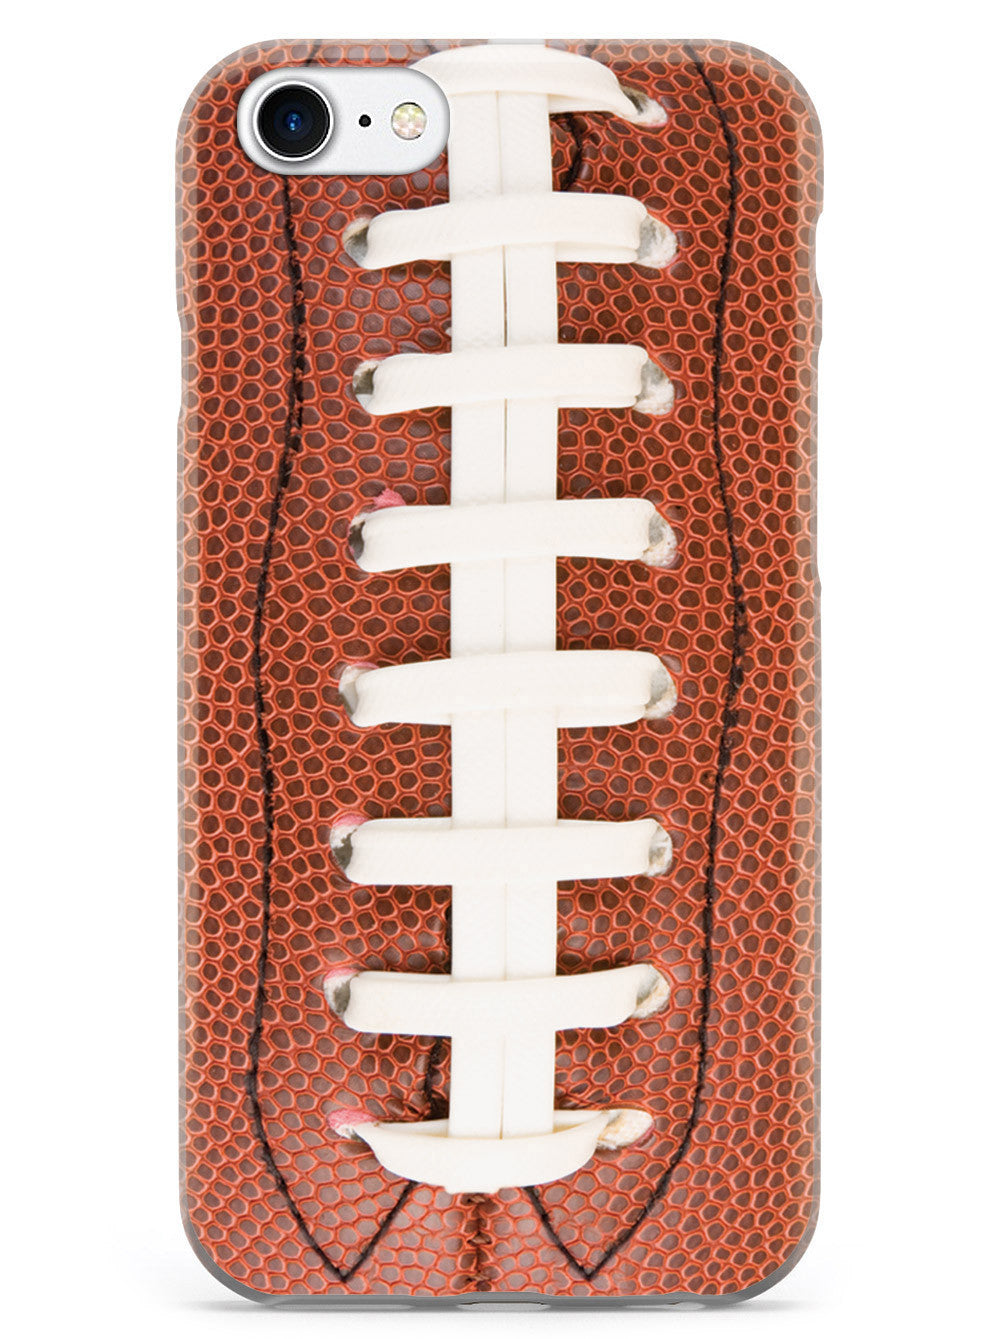 Straight On Football Texture Case